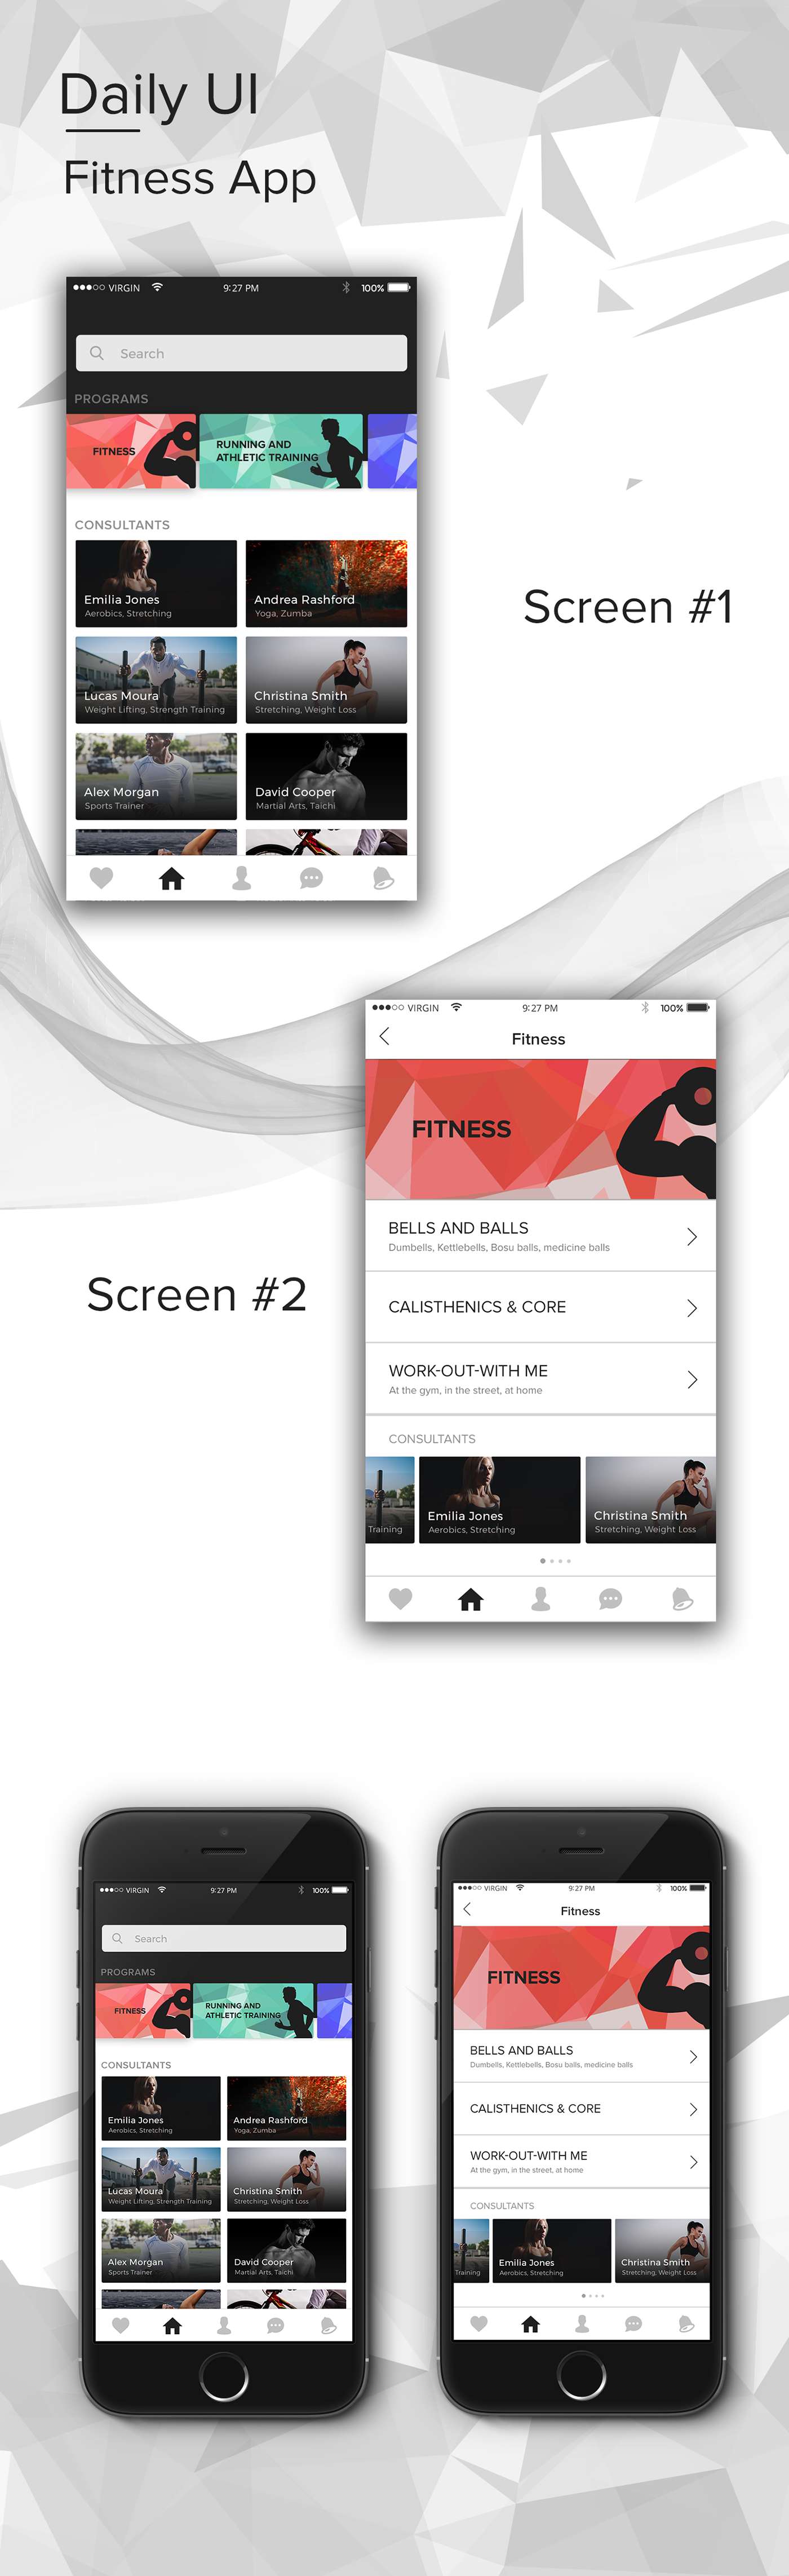 fitness gym Health App daily ui app design ui concept Sports App ui design